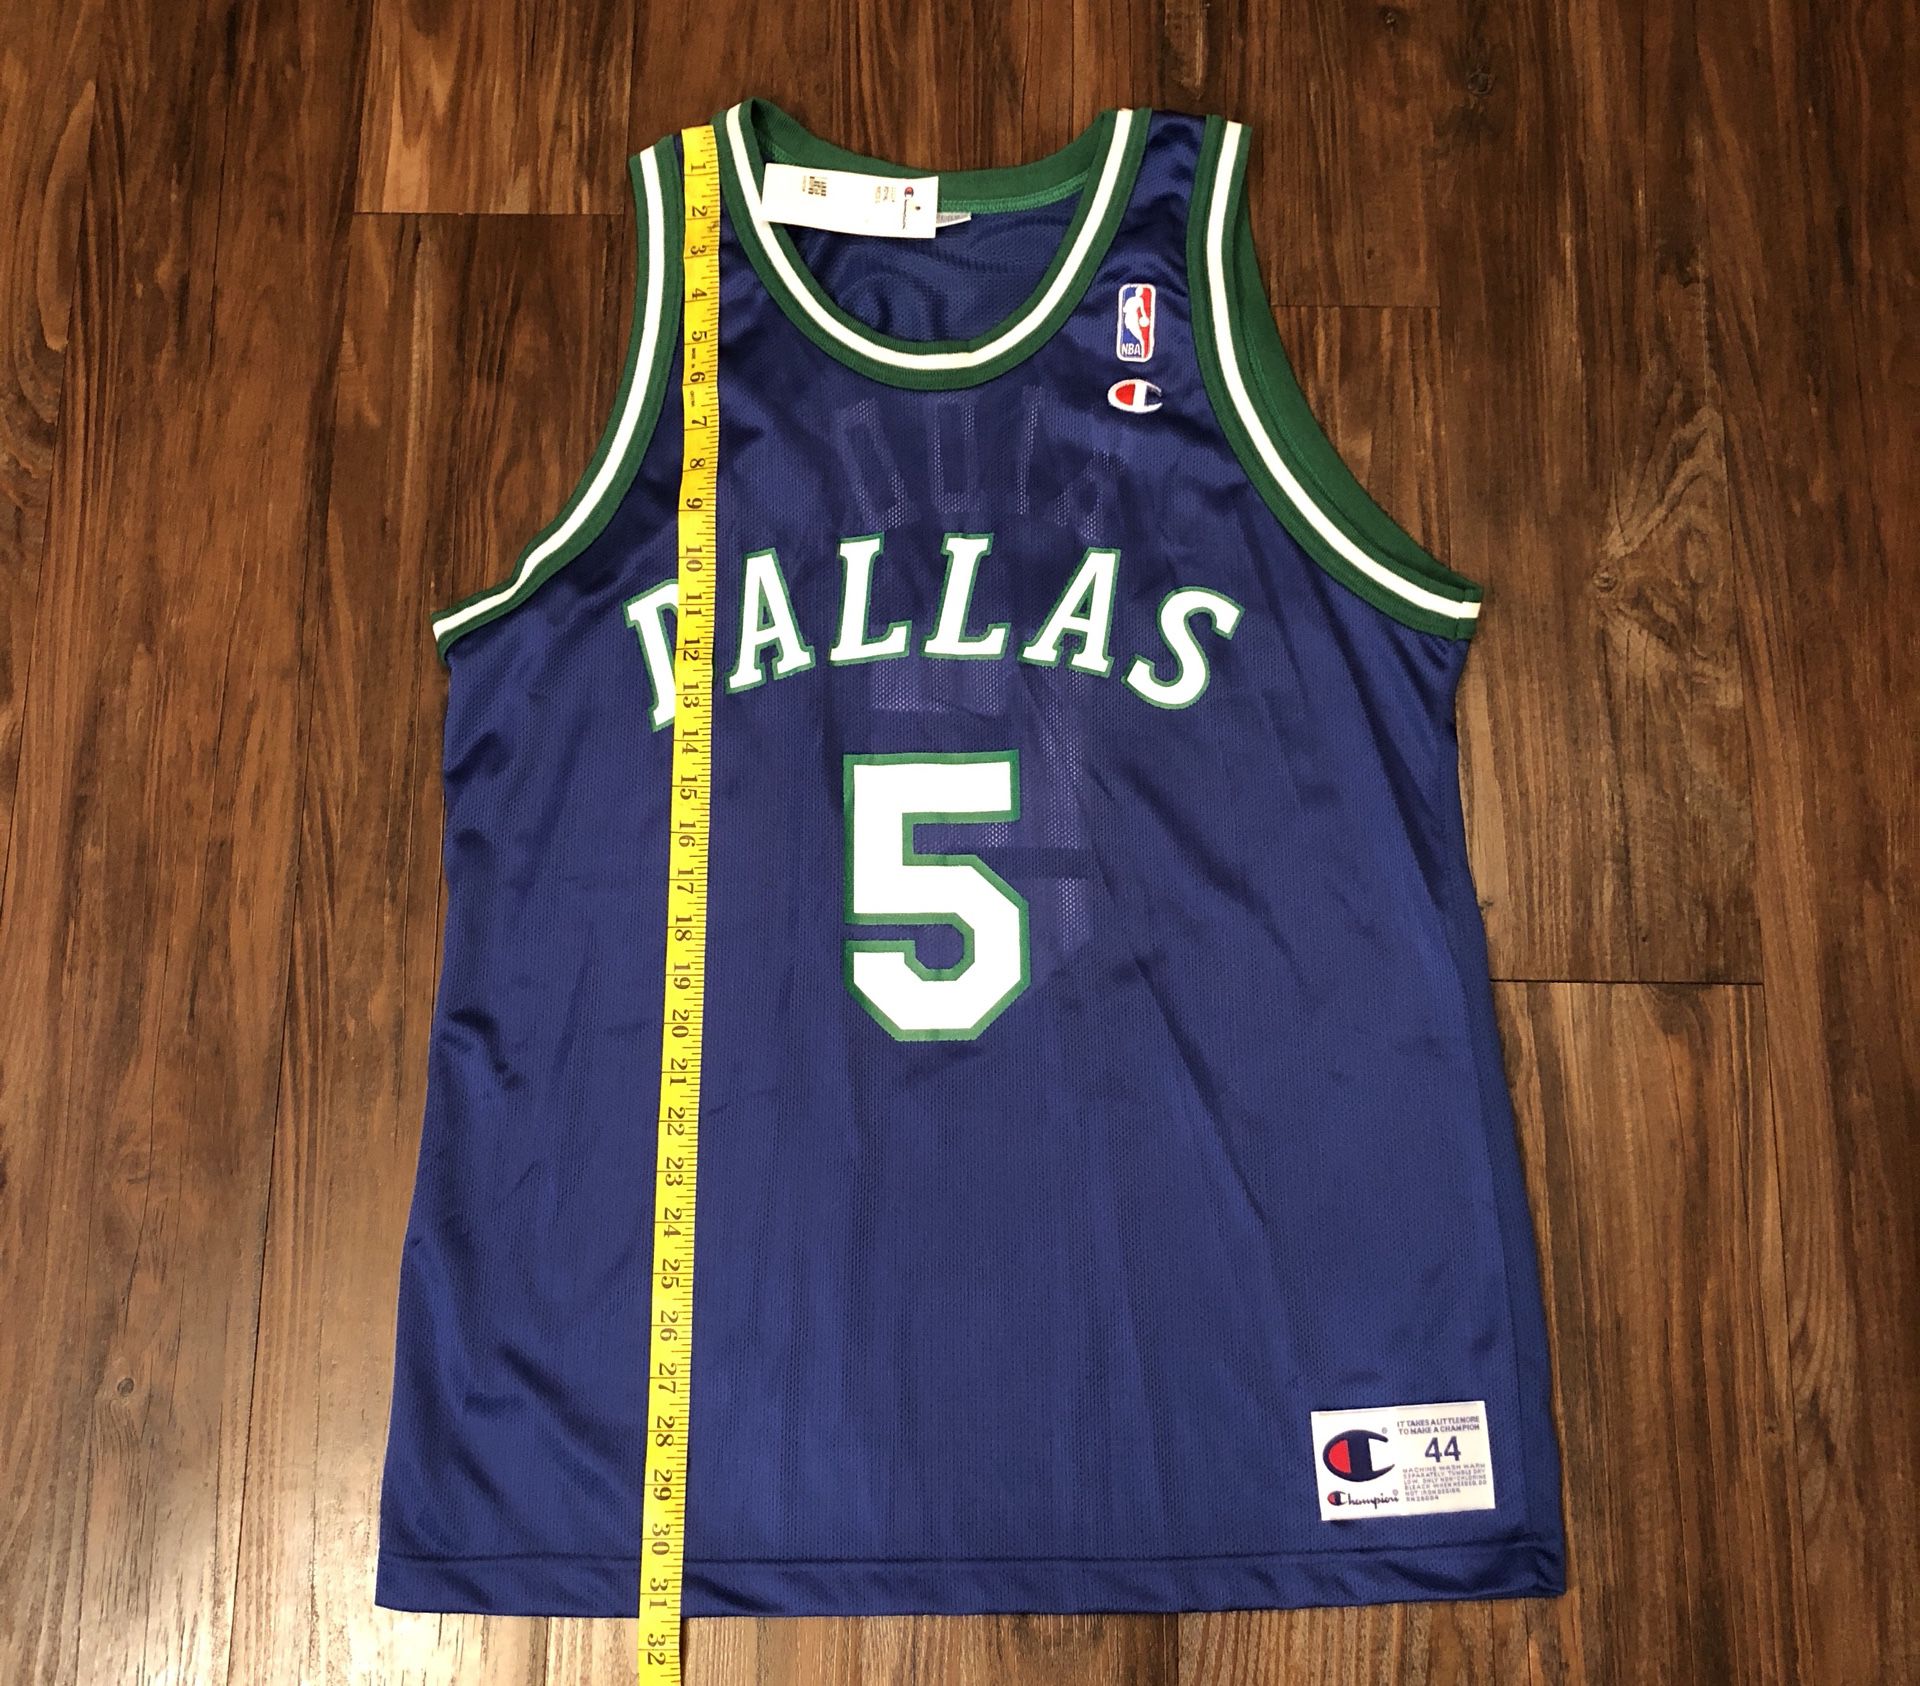 Jason Kidd Dallas Mavericks Jersey Sz. 48 (XL) – Throwback Thursday CC